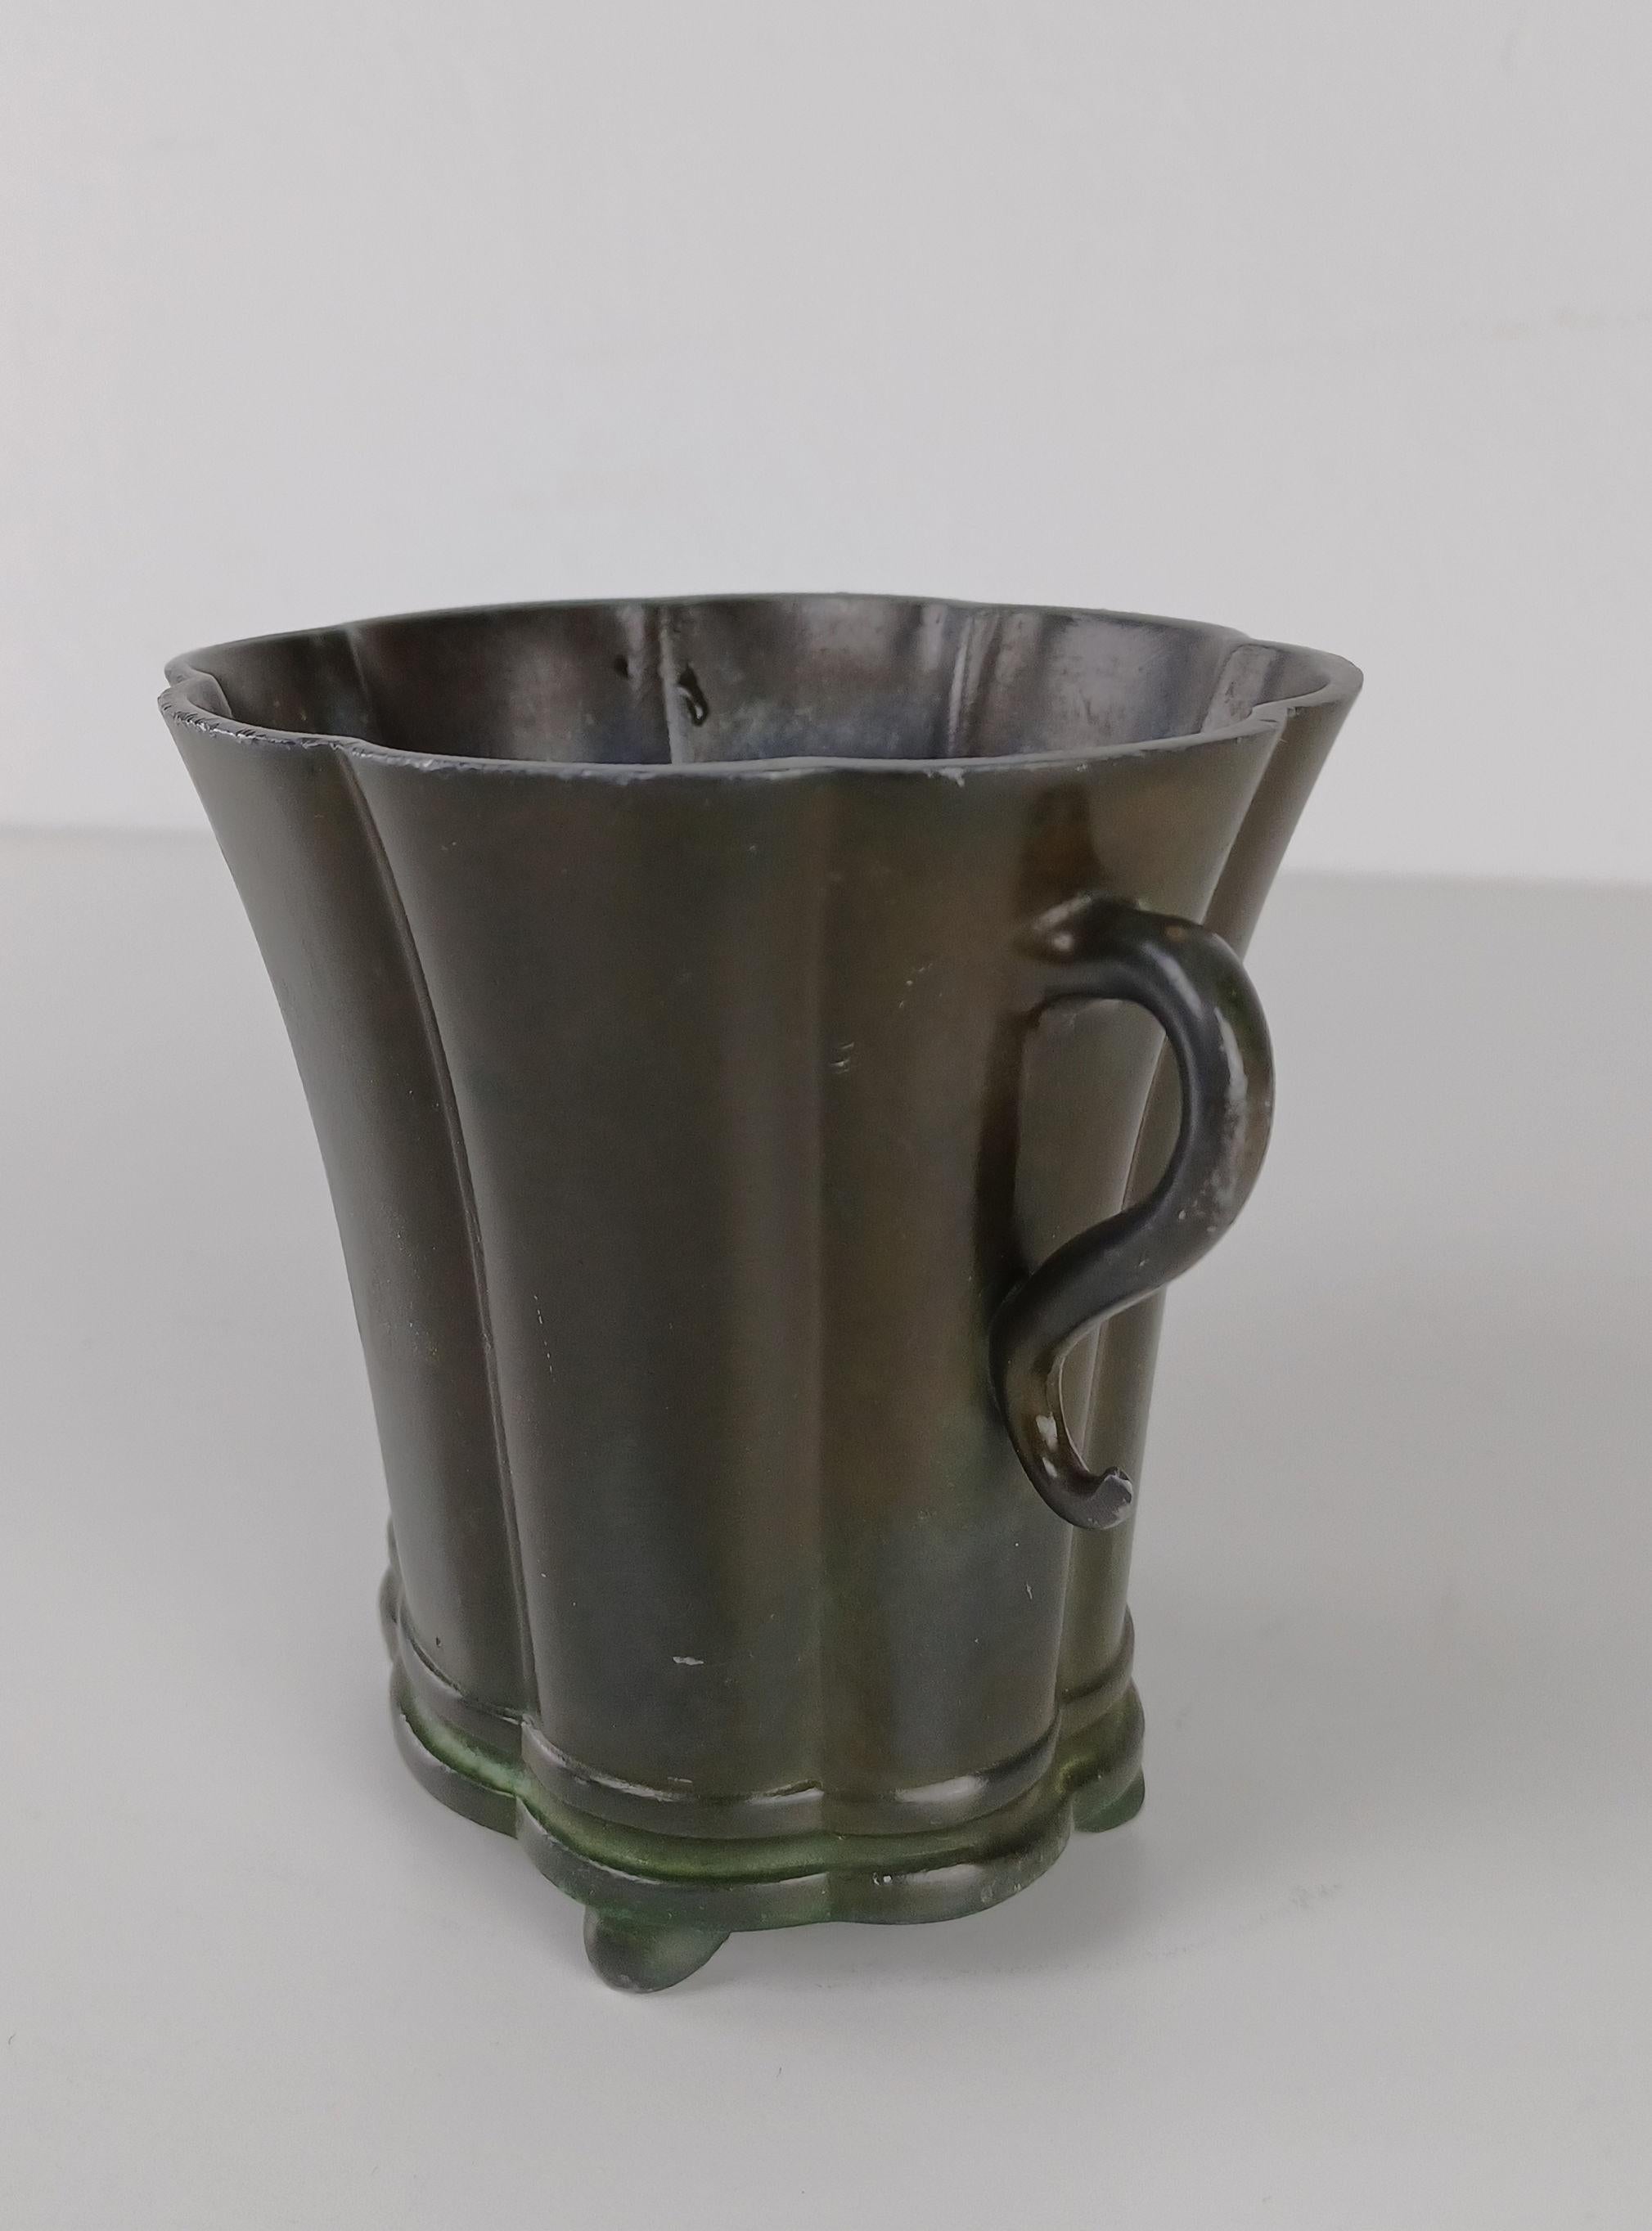 Vase danois en métal art déco Just Andersen produit par Just Andersen A/S dans les années 1940.

Le vase est en bon état et porte la marque de Condit. Marque triangulaire d'Andersens. 

Just Andersen 1884-1943 est né à Godhavn sur l'île de Disko,